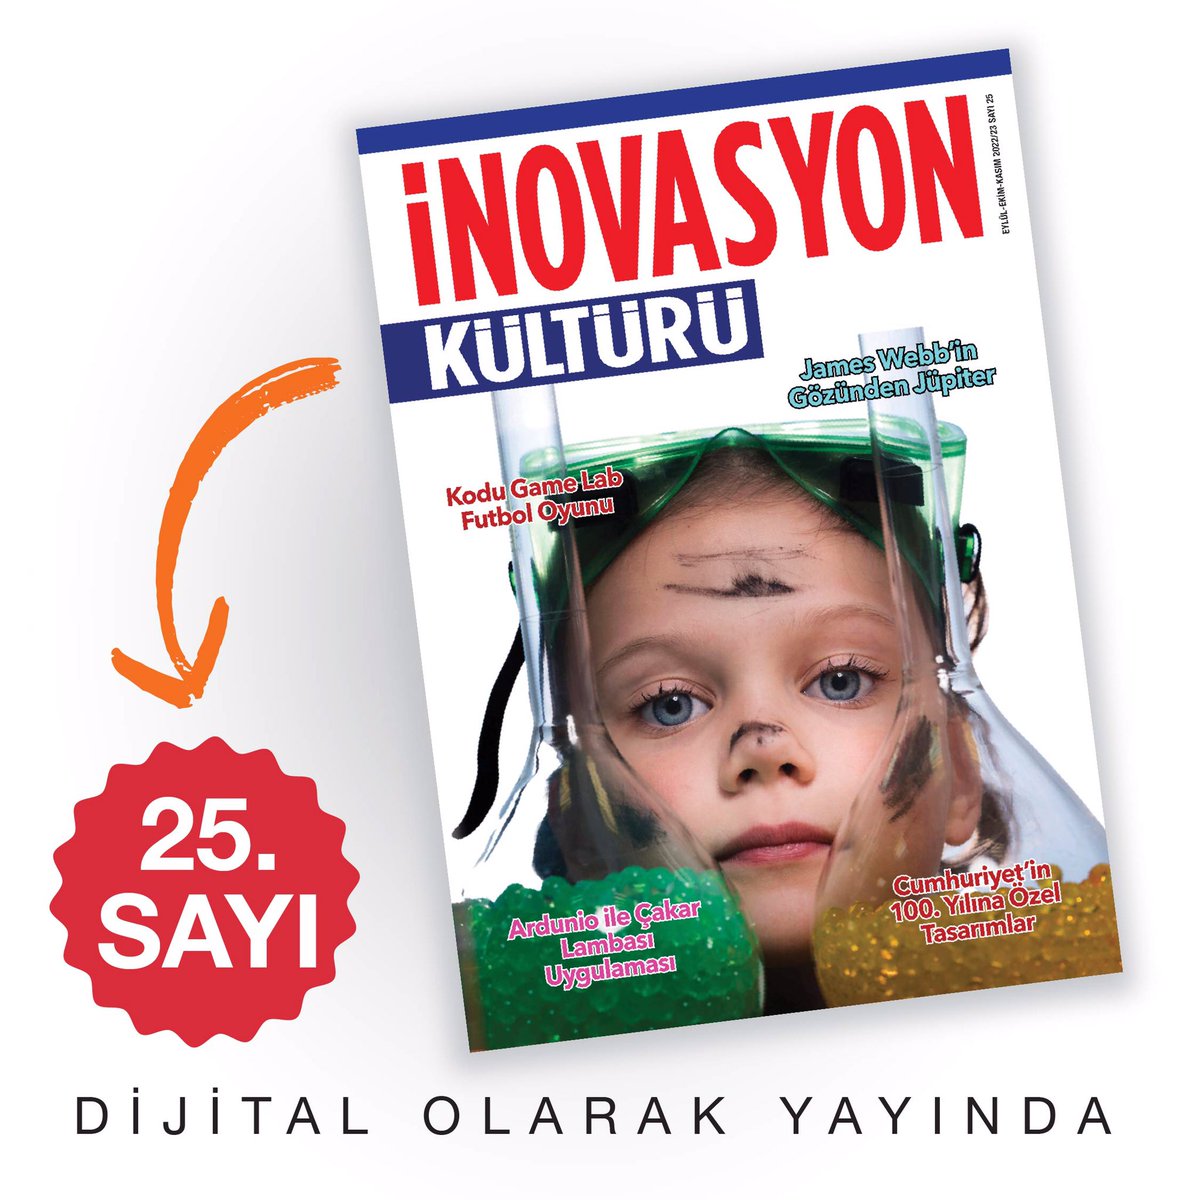 İnovasyon Kültürü Dergimizin 25. sayısı dijitalde yayınlandı! Okumak için; inovasyonkulturu.com